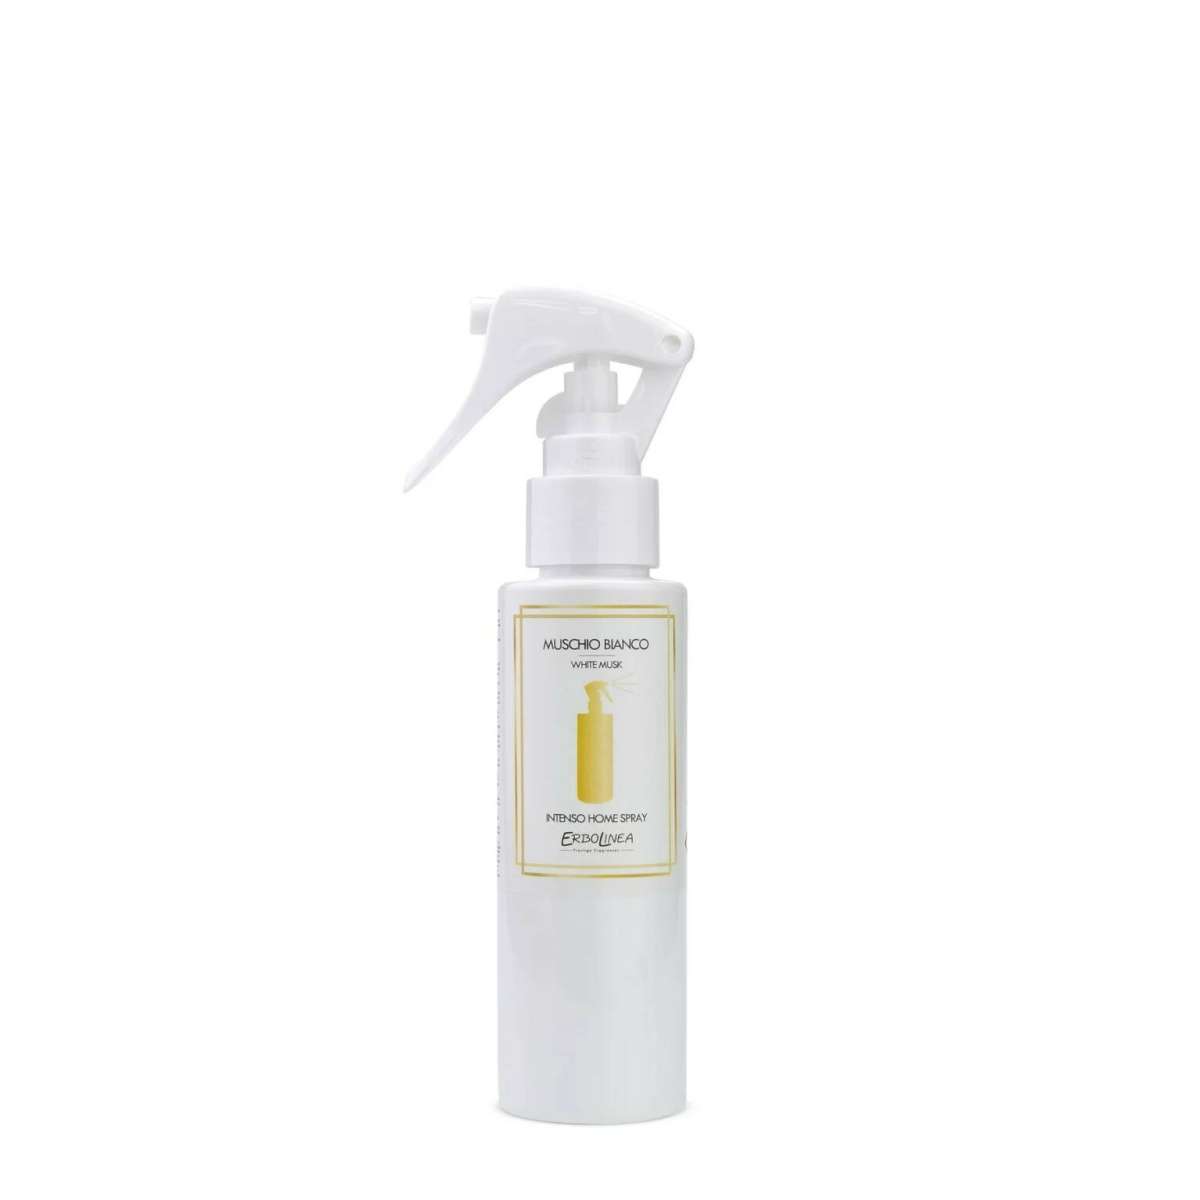 Immagine del prodotto Home Spray per Ambiente Muschio Bianco 100 ml | Erbolinea